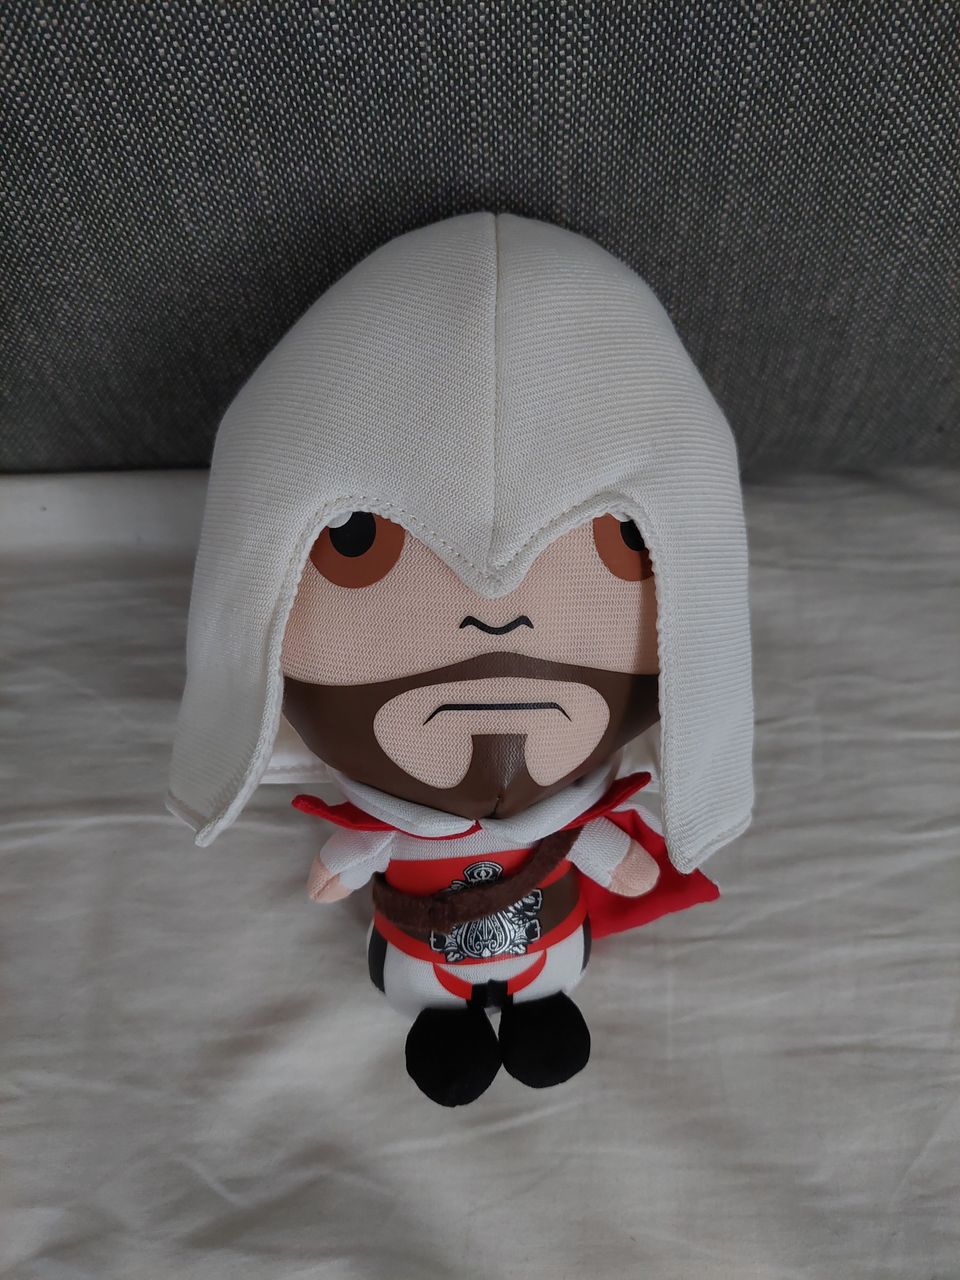 Assasins creed Ezio pehmolelu